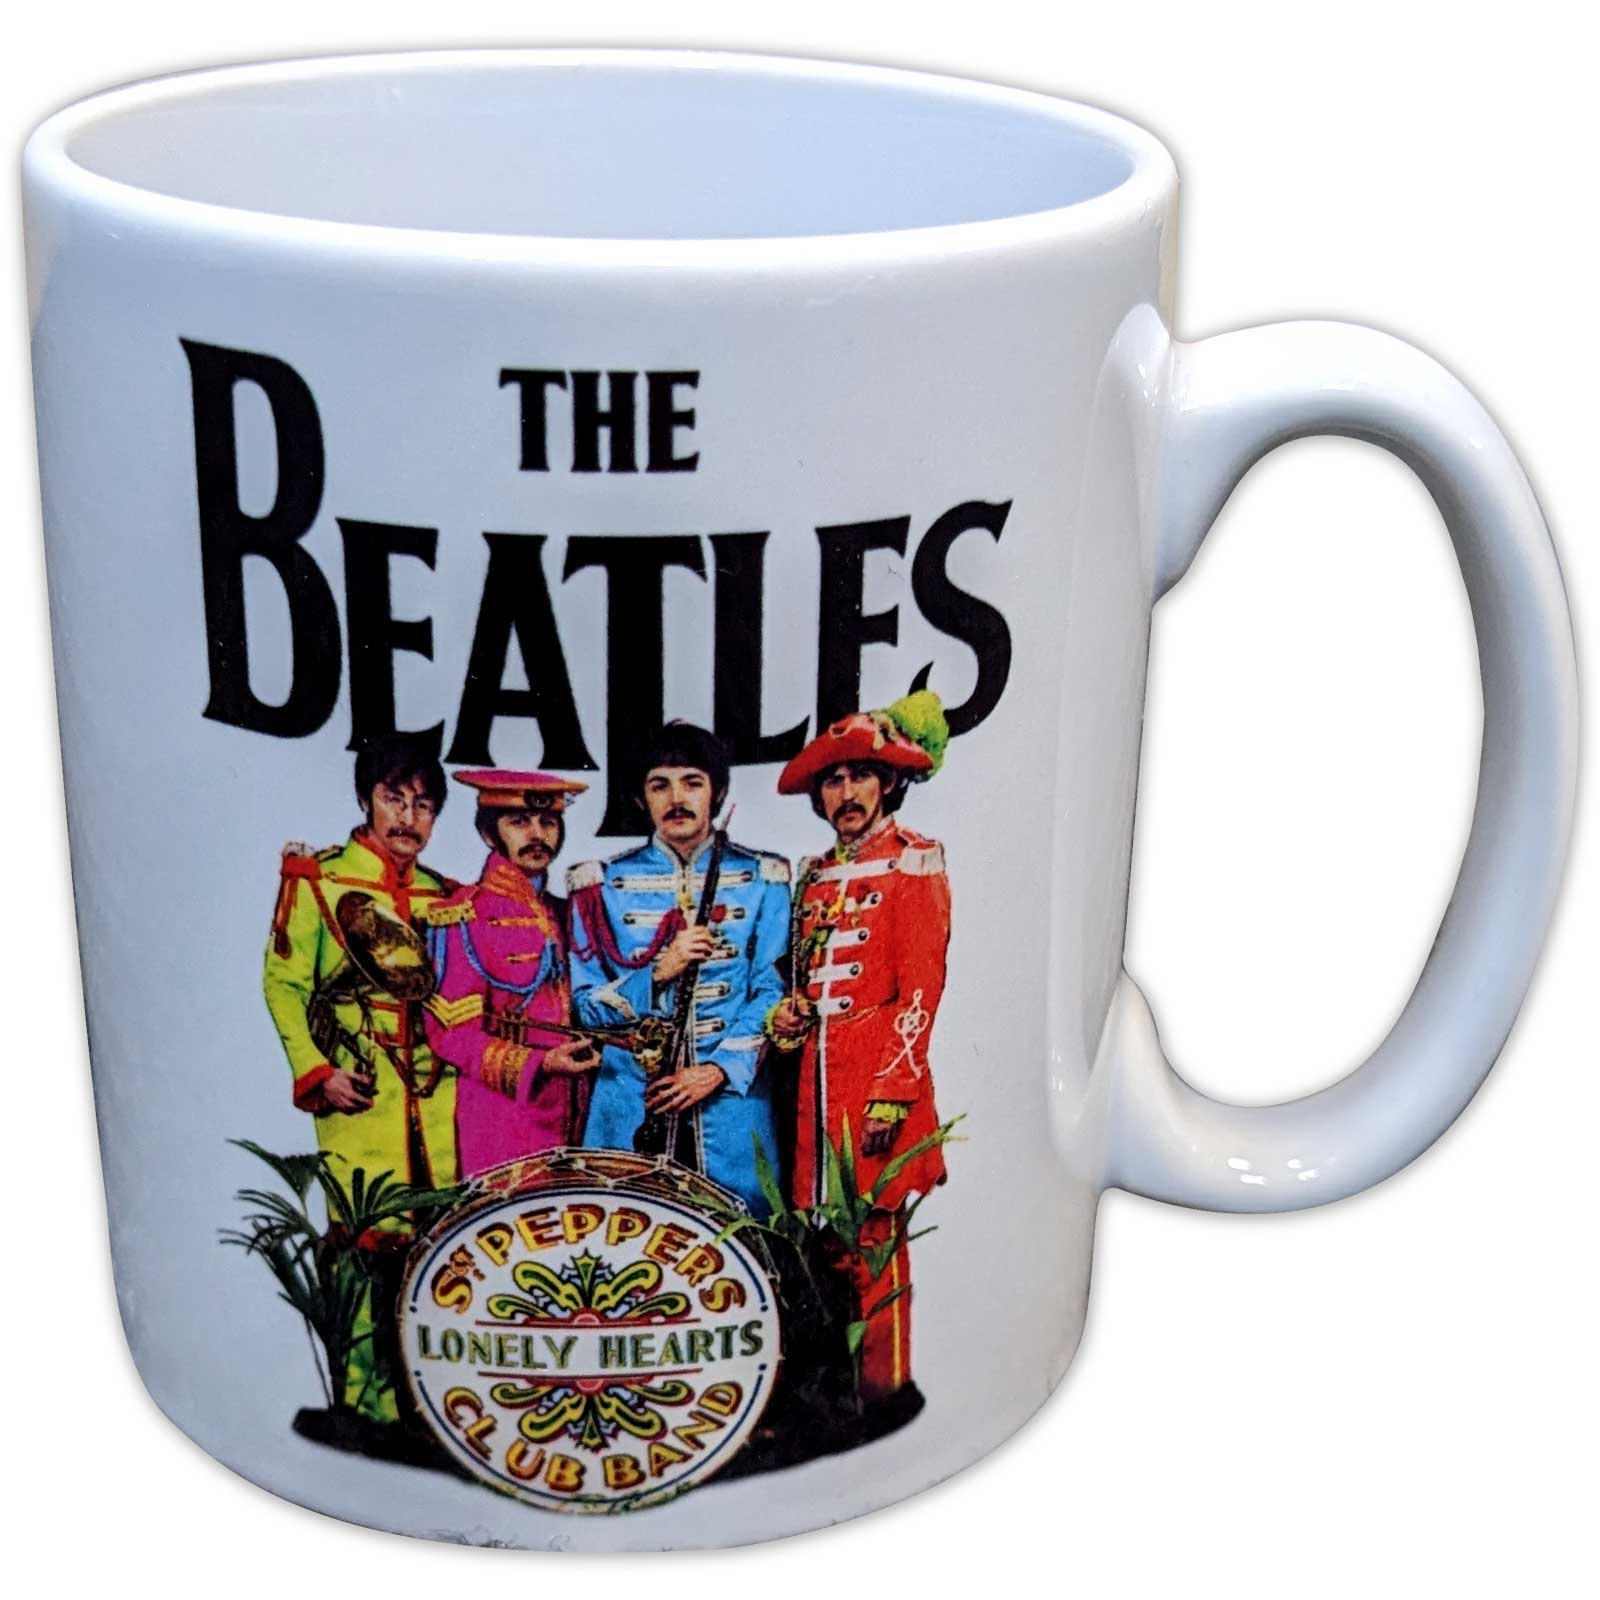 THE BEATLES ザ・ビートルズ (ABBEY ROAD発売55周年記念 ) - Sgt. Pepper / マグカップ 【公式 / オフィシャル】